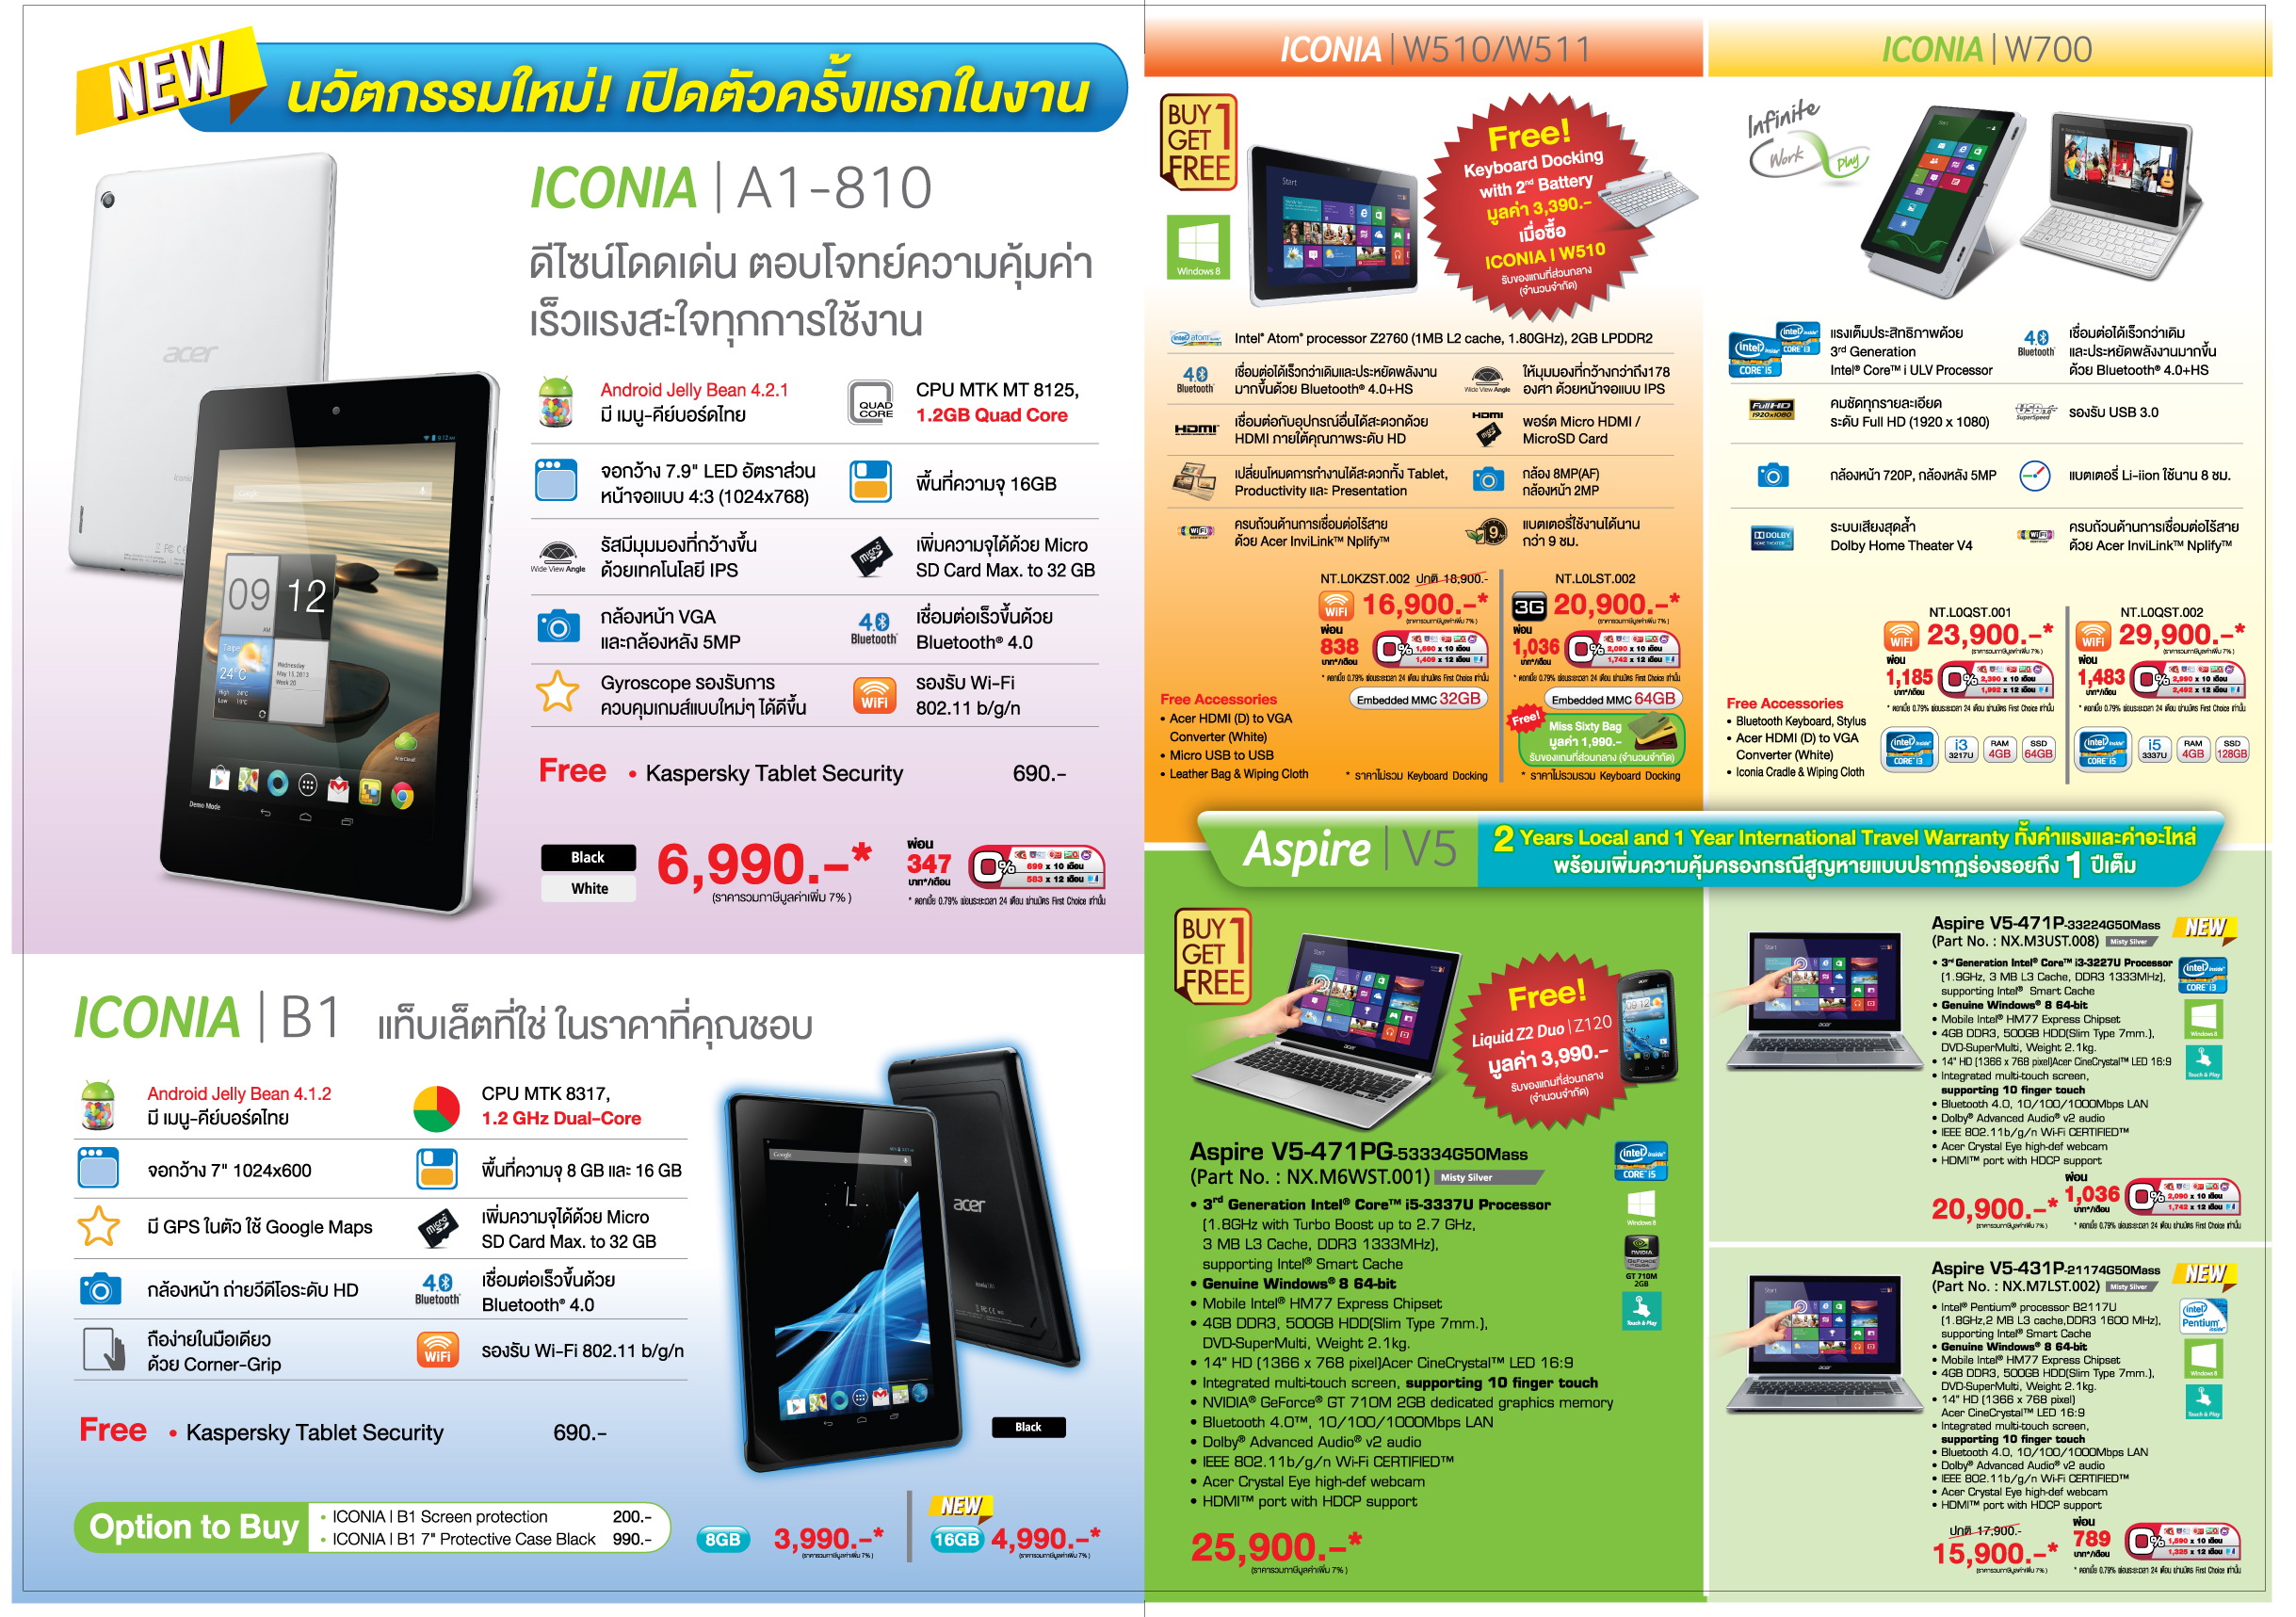 โปรโมชัน Acer ในงาน Thailand Mobile Expo 2013 Hi-End (TME 2013) เดือนพฤษภาคม